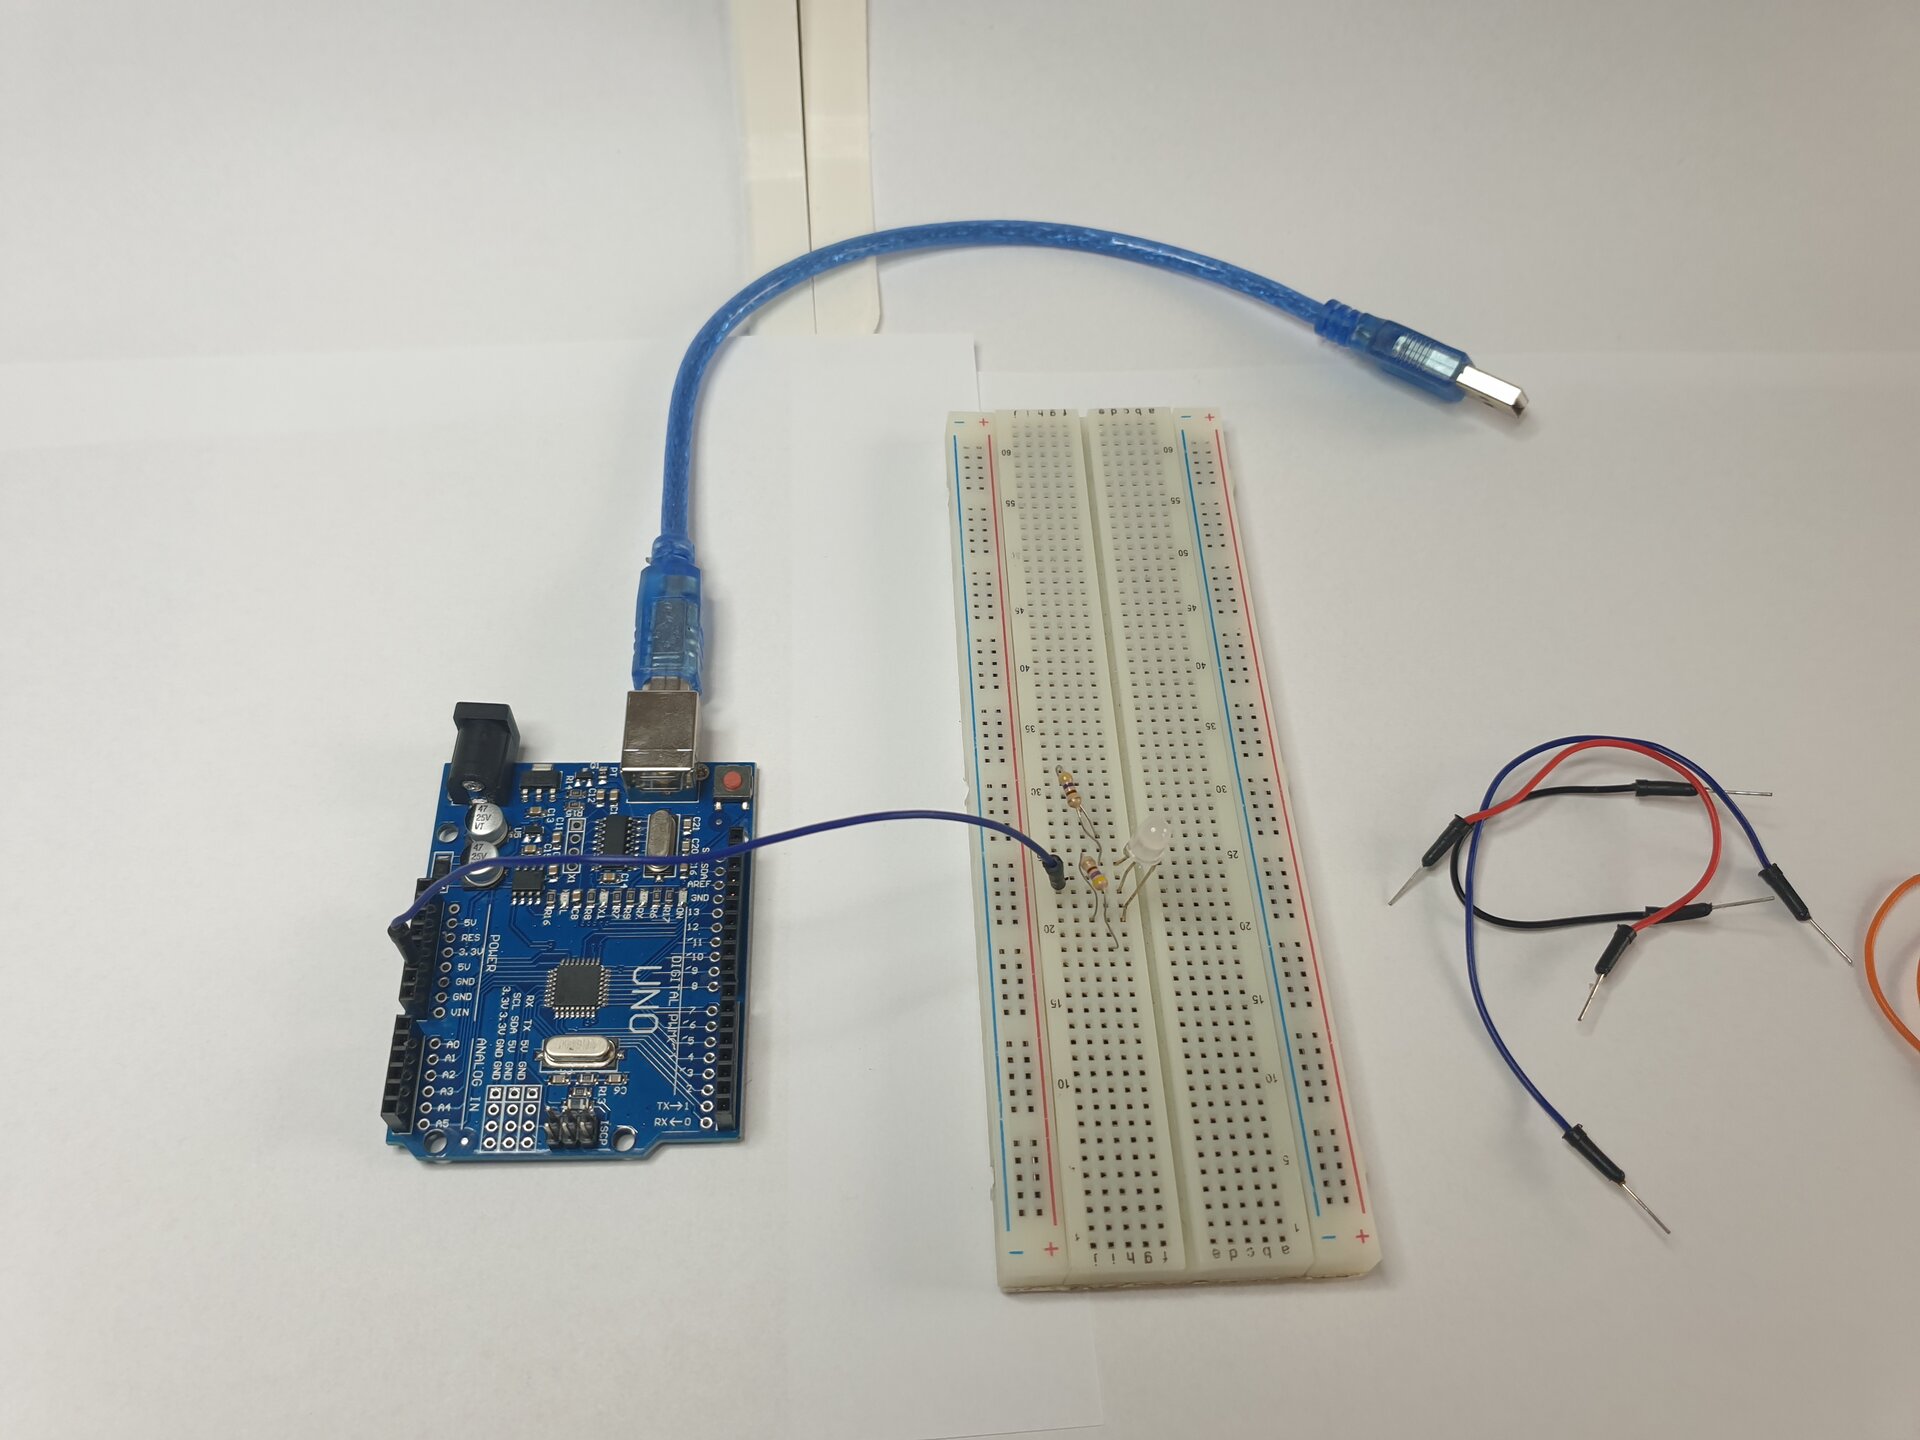 Zdjęcie przedstawia moduł Arduino z podłączonym do niego kablem USB, płytkę stykową, w którą wpięto diodę oraz leżące obok płytki przewody. Połączono moduł z płytką za pomocą przewodu wpiętego w module w 5 V i w płytce w tym samym wierszu, co środkowa nóżka diody. Dwa rezystory wpięto w płytkę stykową w taki sposób, że jedna nóżka każdego rezystora jest w tym samym wierszu, co zewnętrzne nóżki diody, a druga nóżka każdego rezystora jest wpięta „na zewnątrz” nóżek diody.